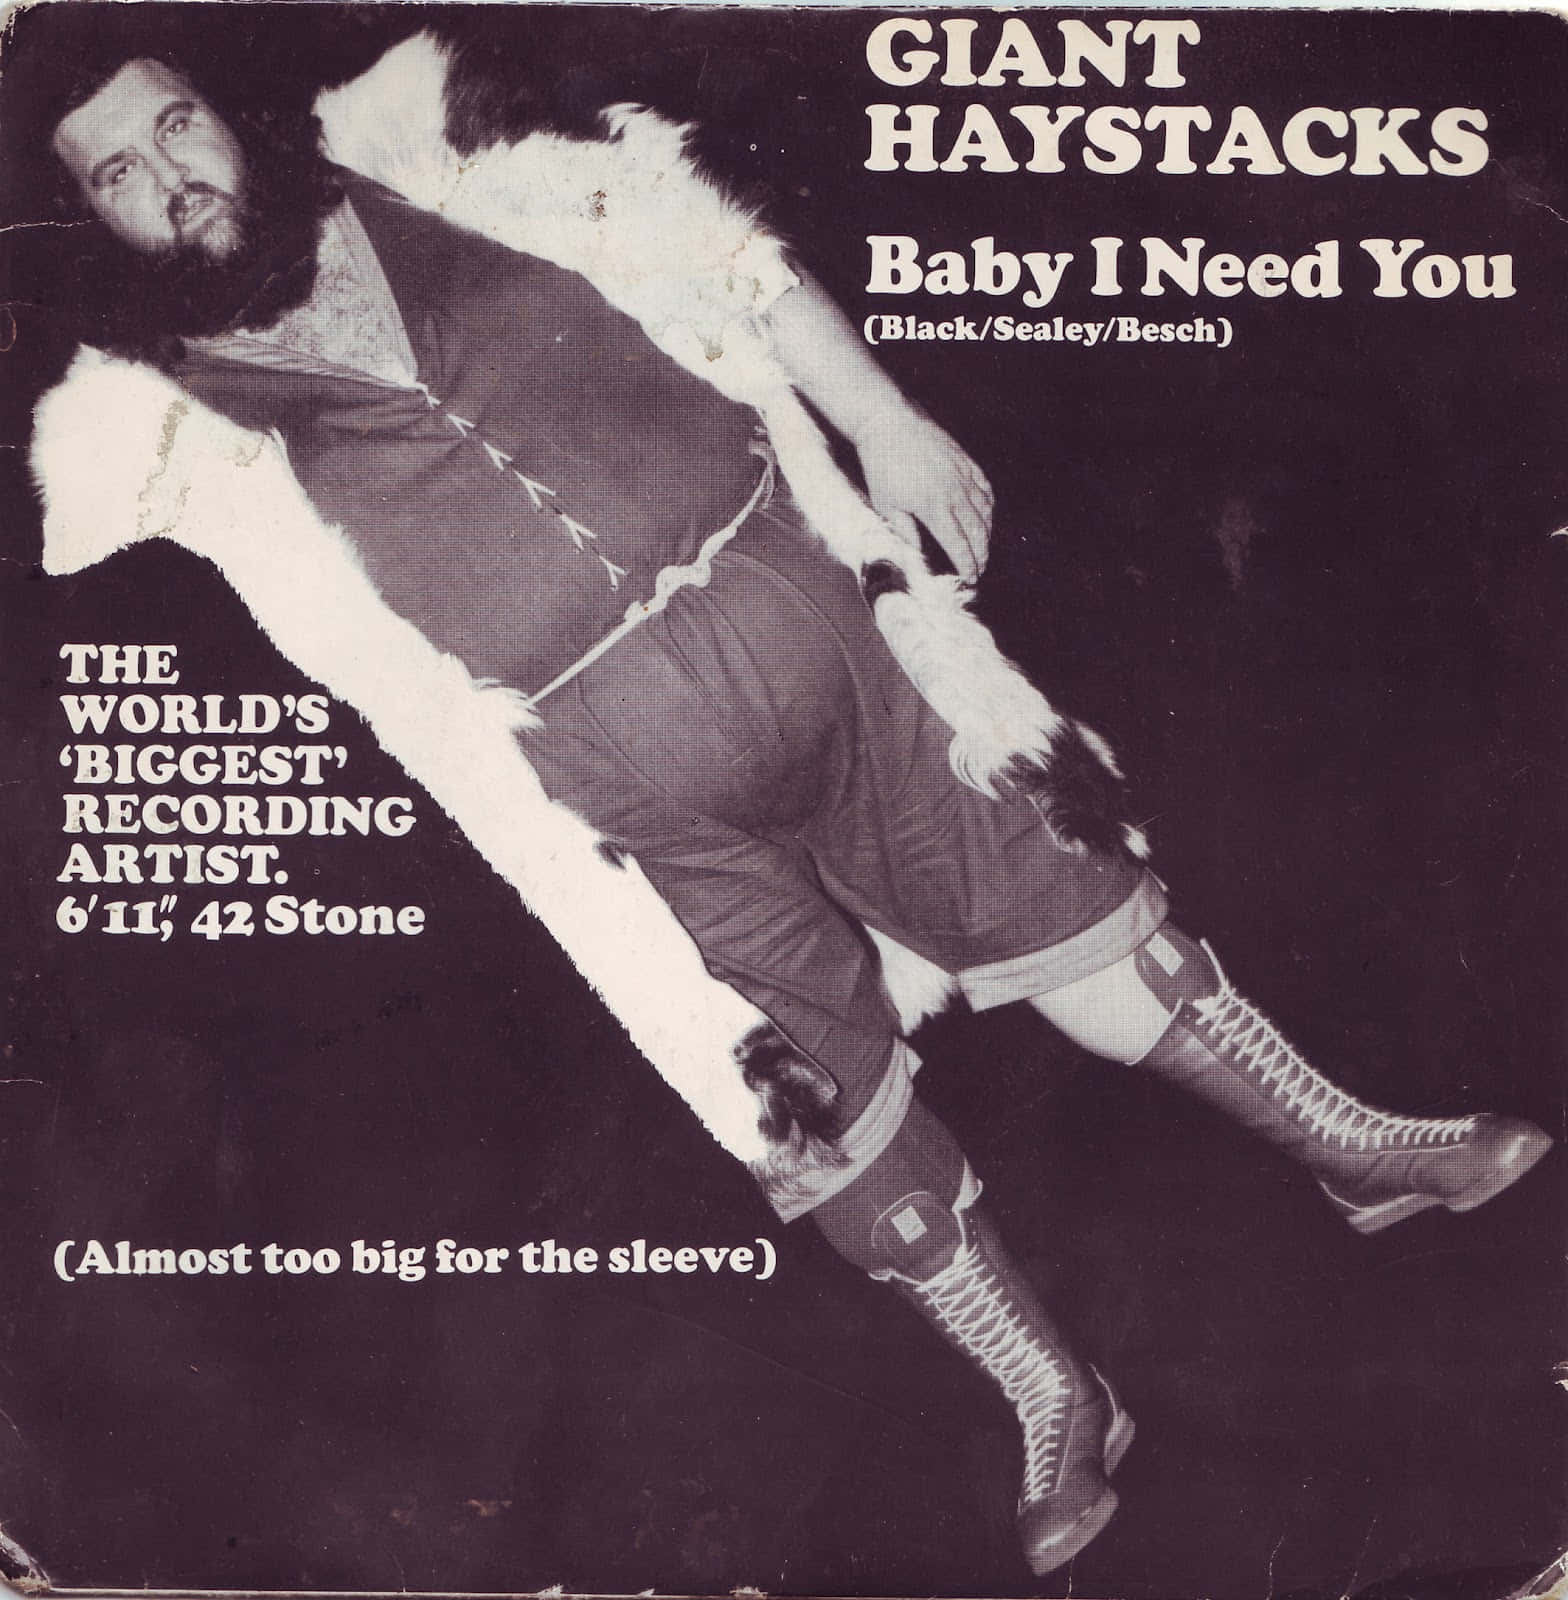 Vintage Haystacks Calhoun Album Cover Wallpaper